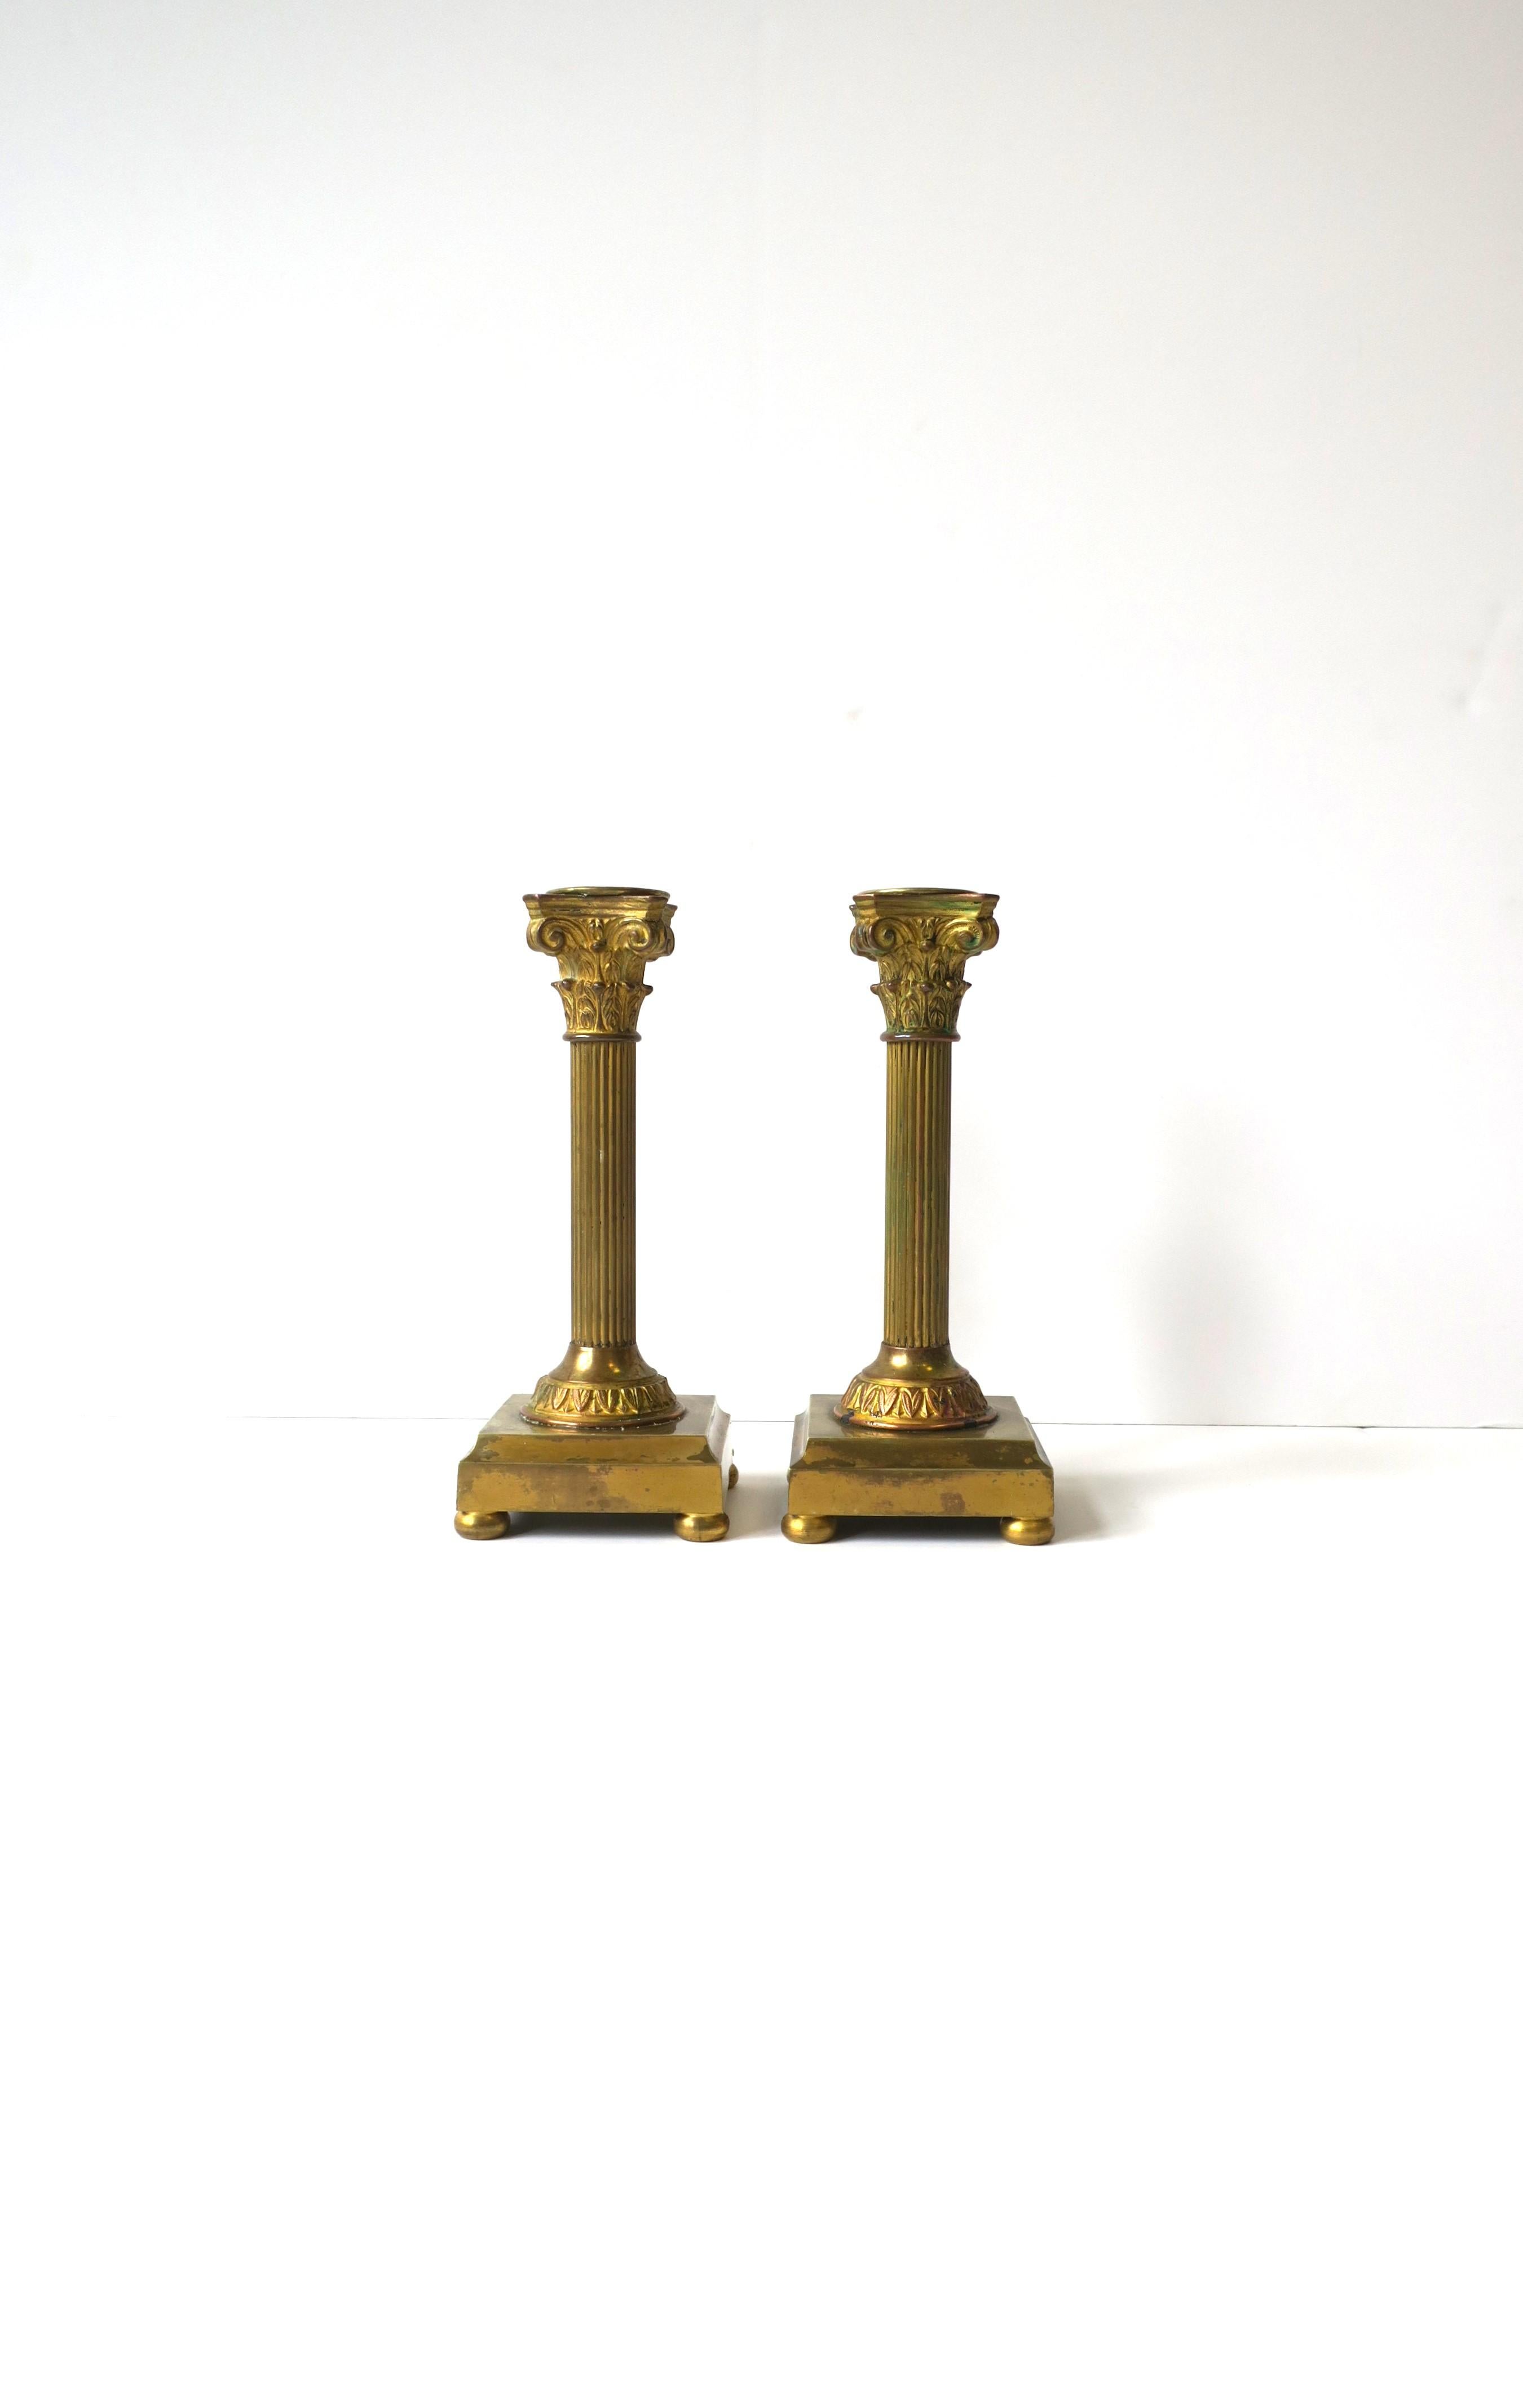 Ein beachtliches Paar französischer Kerzenhalter aus vergoldeter Bronze mit korinthischer Säule im neoklassizistischen Stil, ca. Ende des 19. Jahrhunderts, Frankreich. Die Kerzenhalter stellen die korinthische Säule aus Bronze mit Kupfer-, Messing-